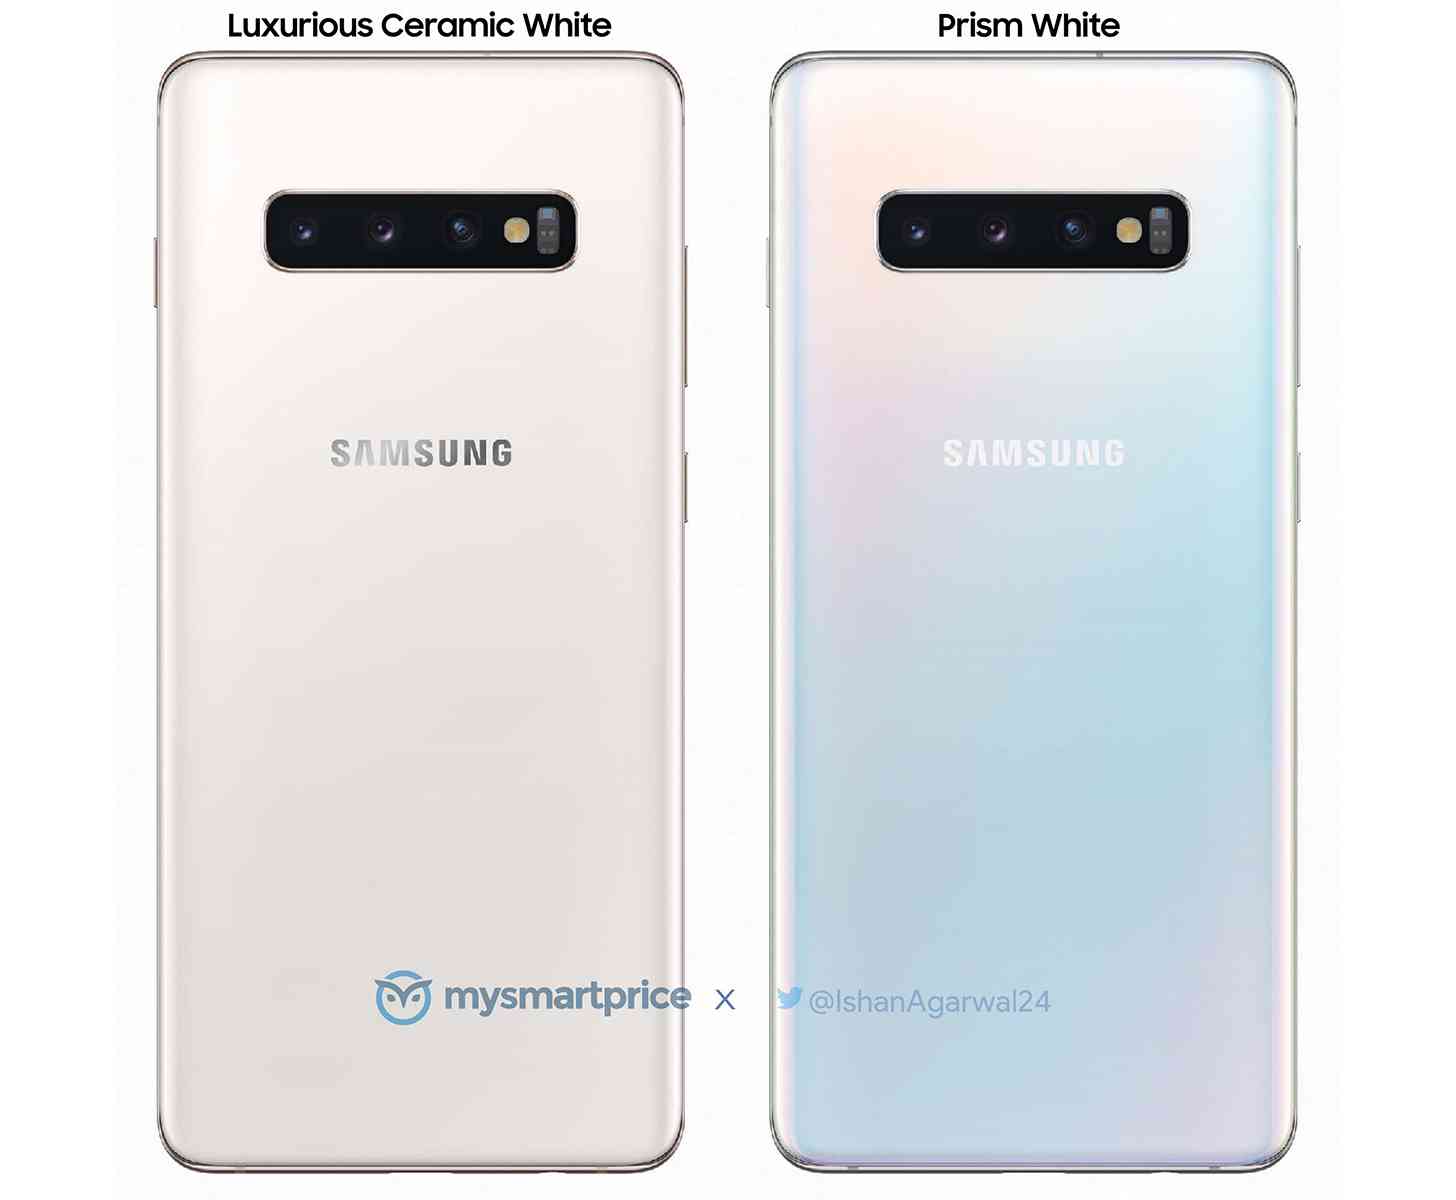 Samsung Galaxy S10+ ceramic white comparison